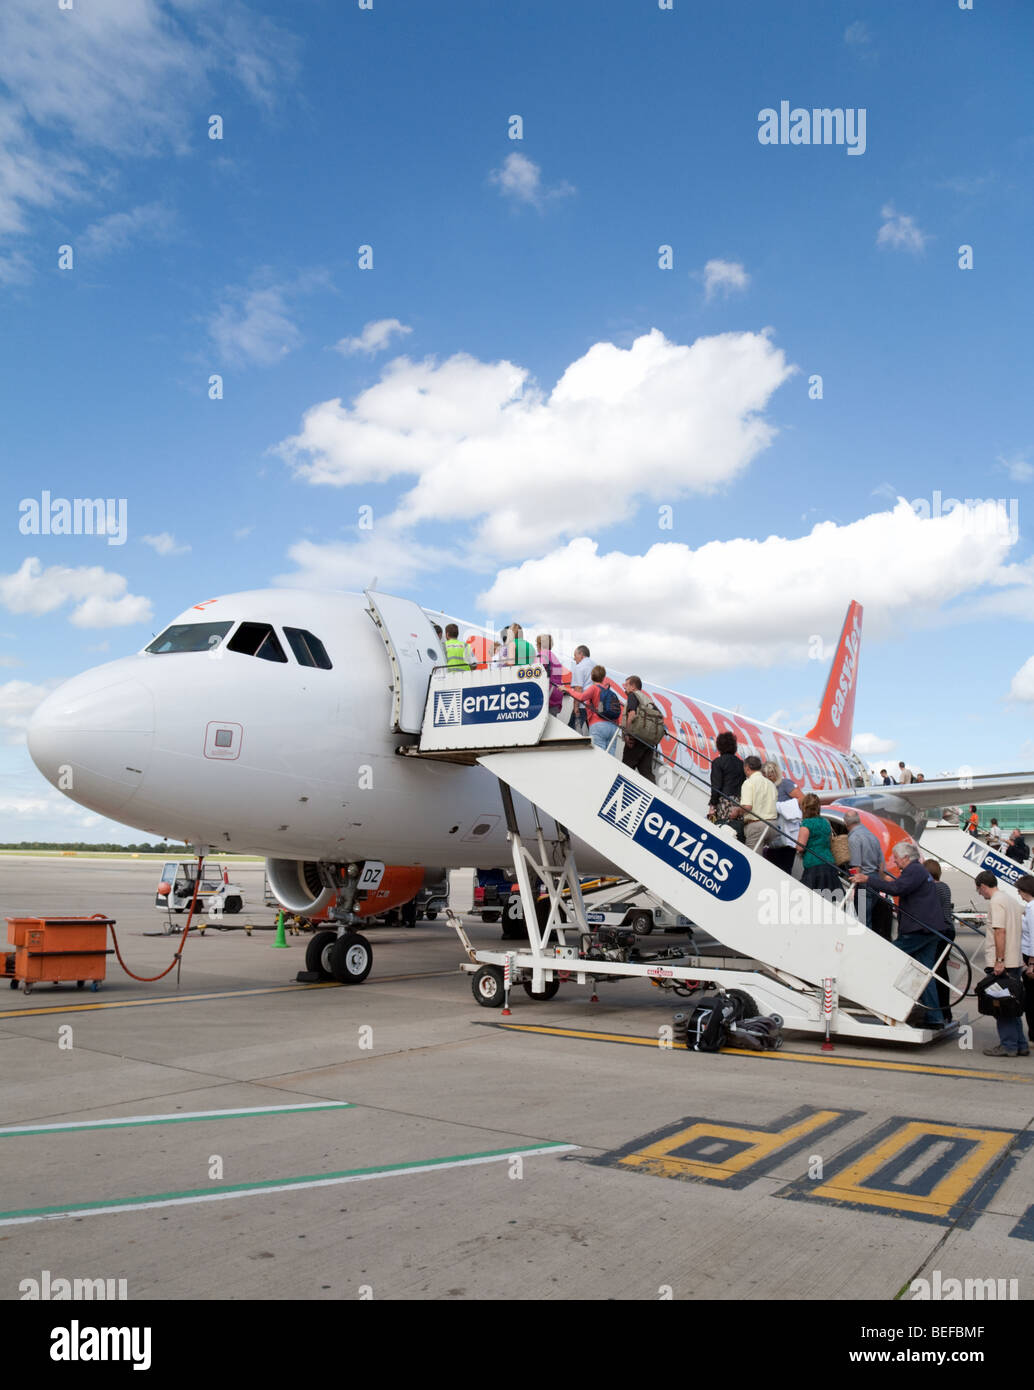 Passagiere, die ein Easyjet Flugzeug am Flughafen Stansted, UK Stockfoto